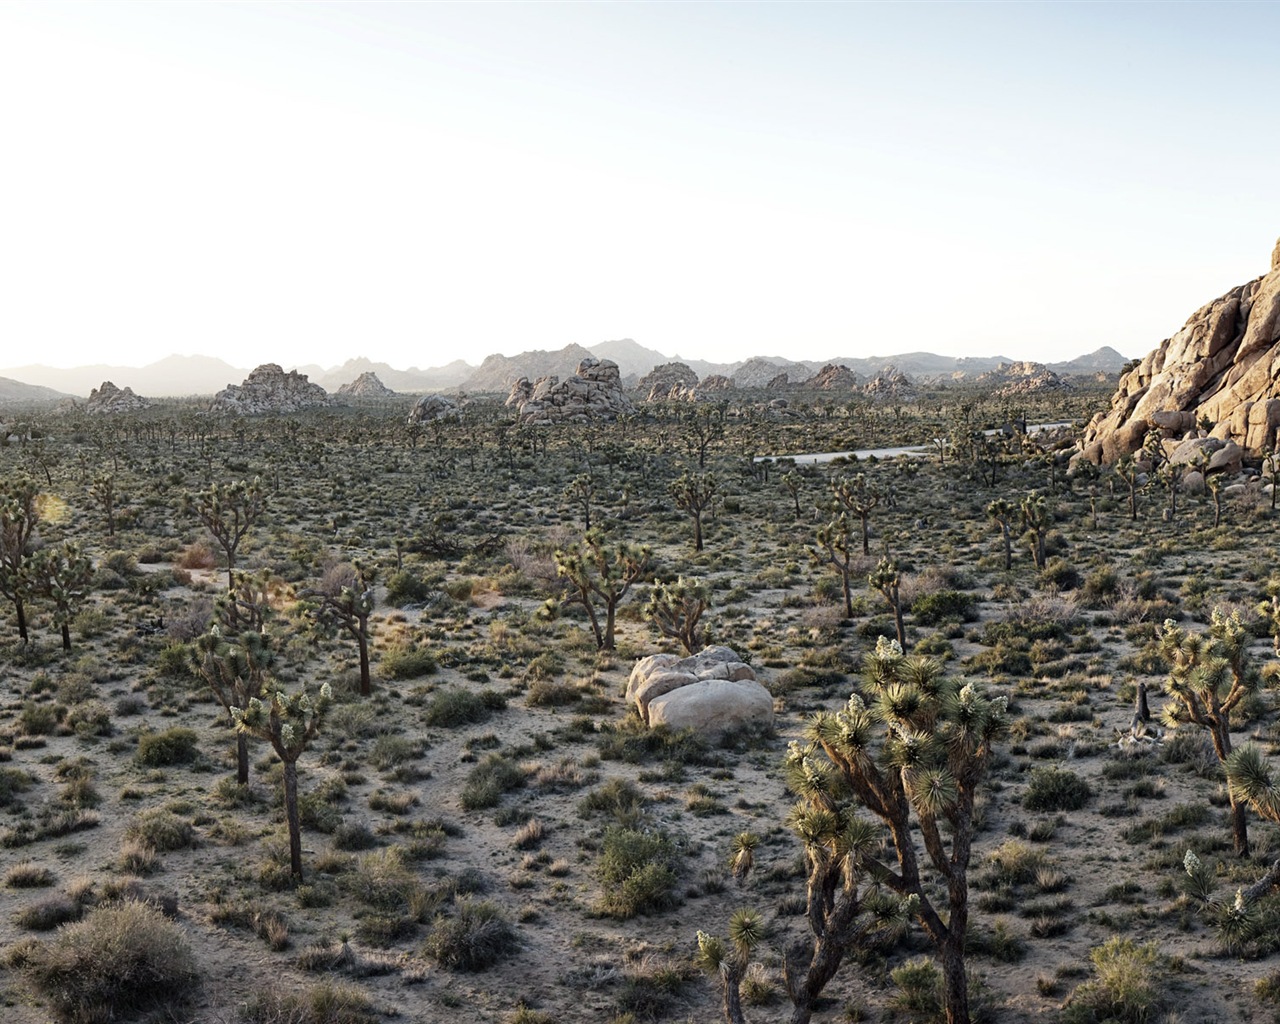 Les déserts chauds et arides, de Windows 8 fonds d'écran widescreen panoramique #9 - 1280x1024